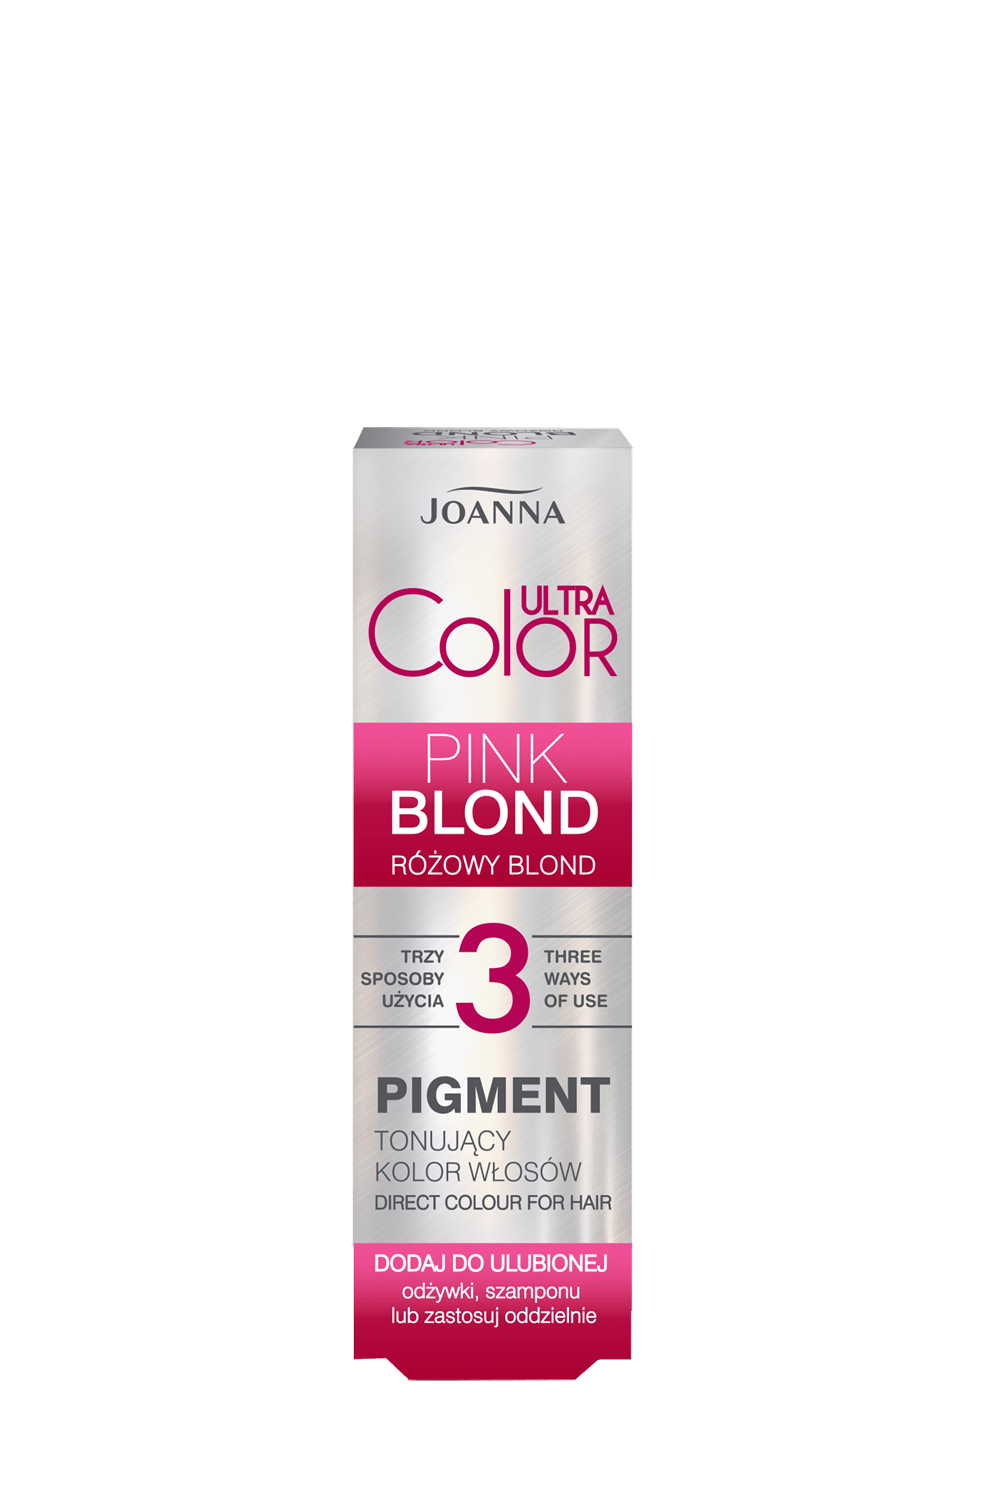 Pigment tonujący do włosów Joanna Ultra Color różowy blond